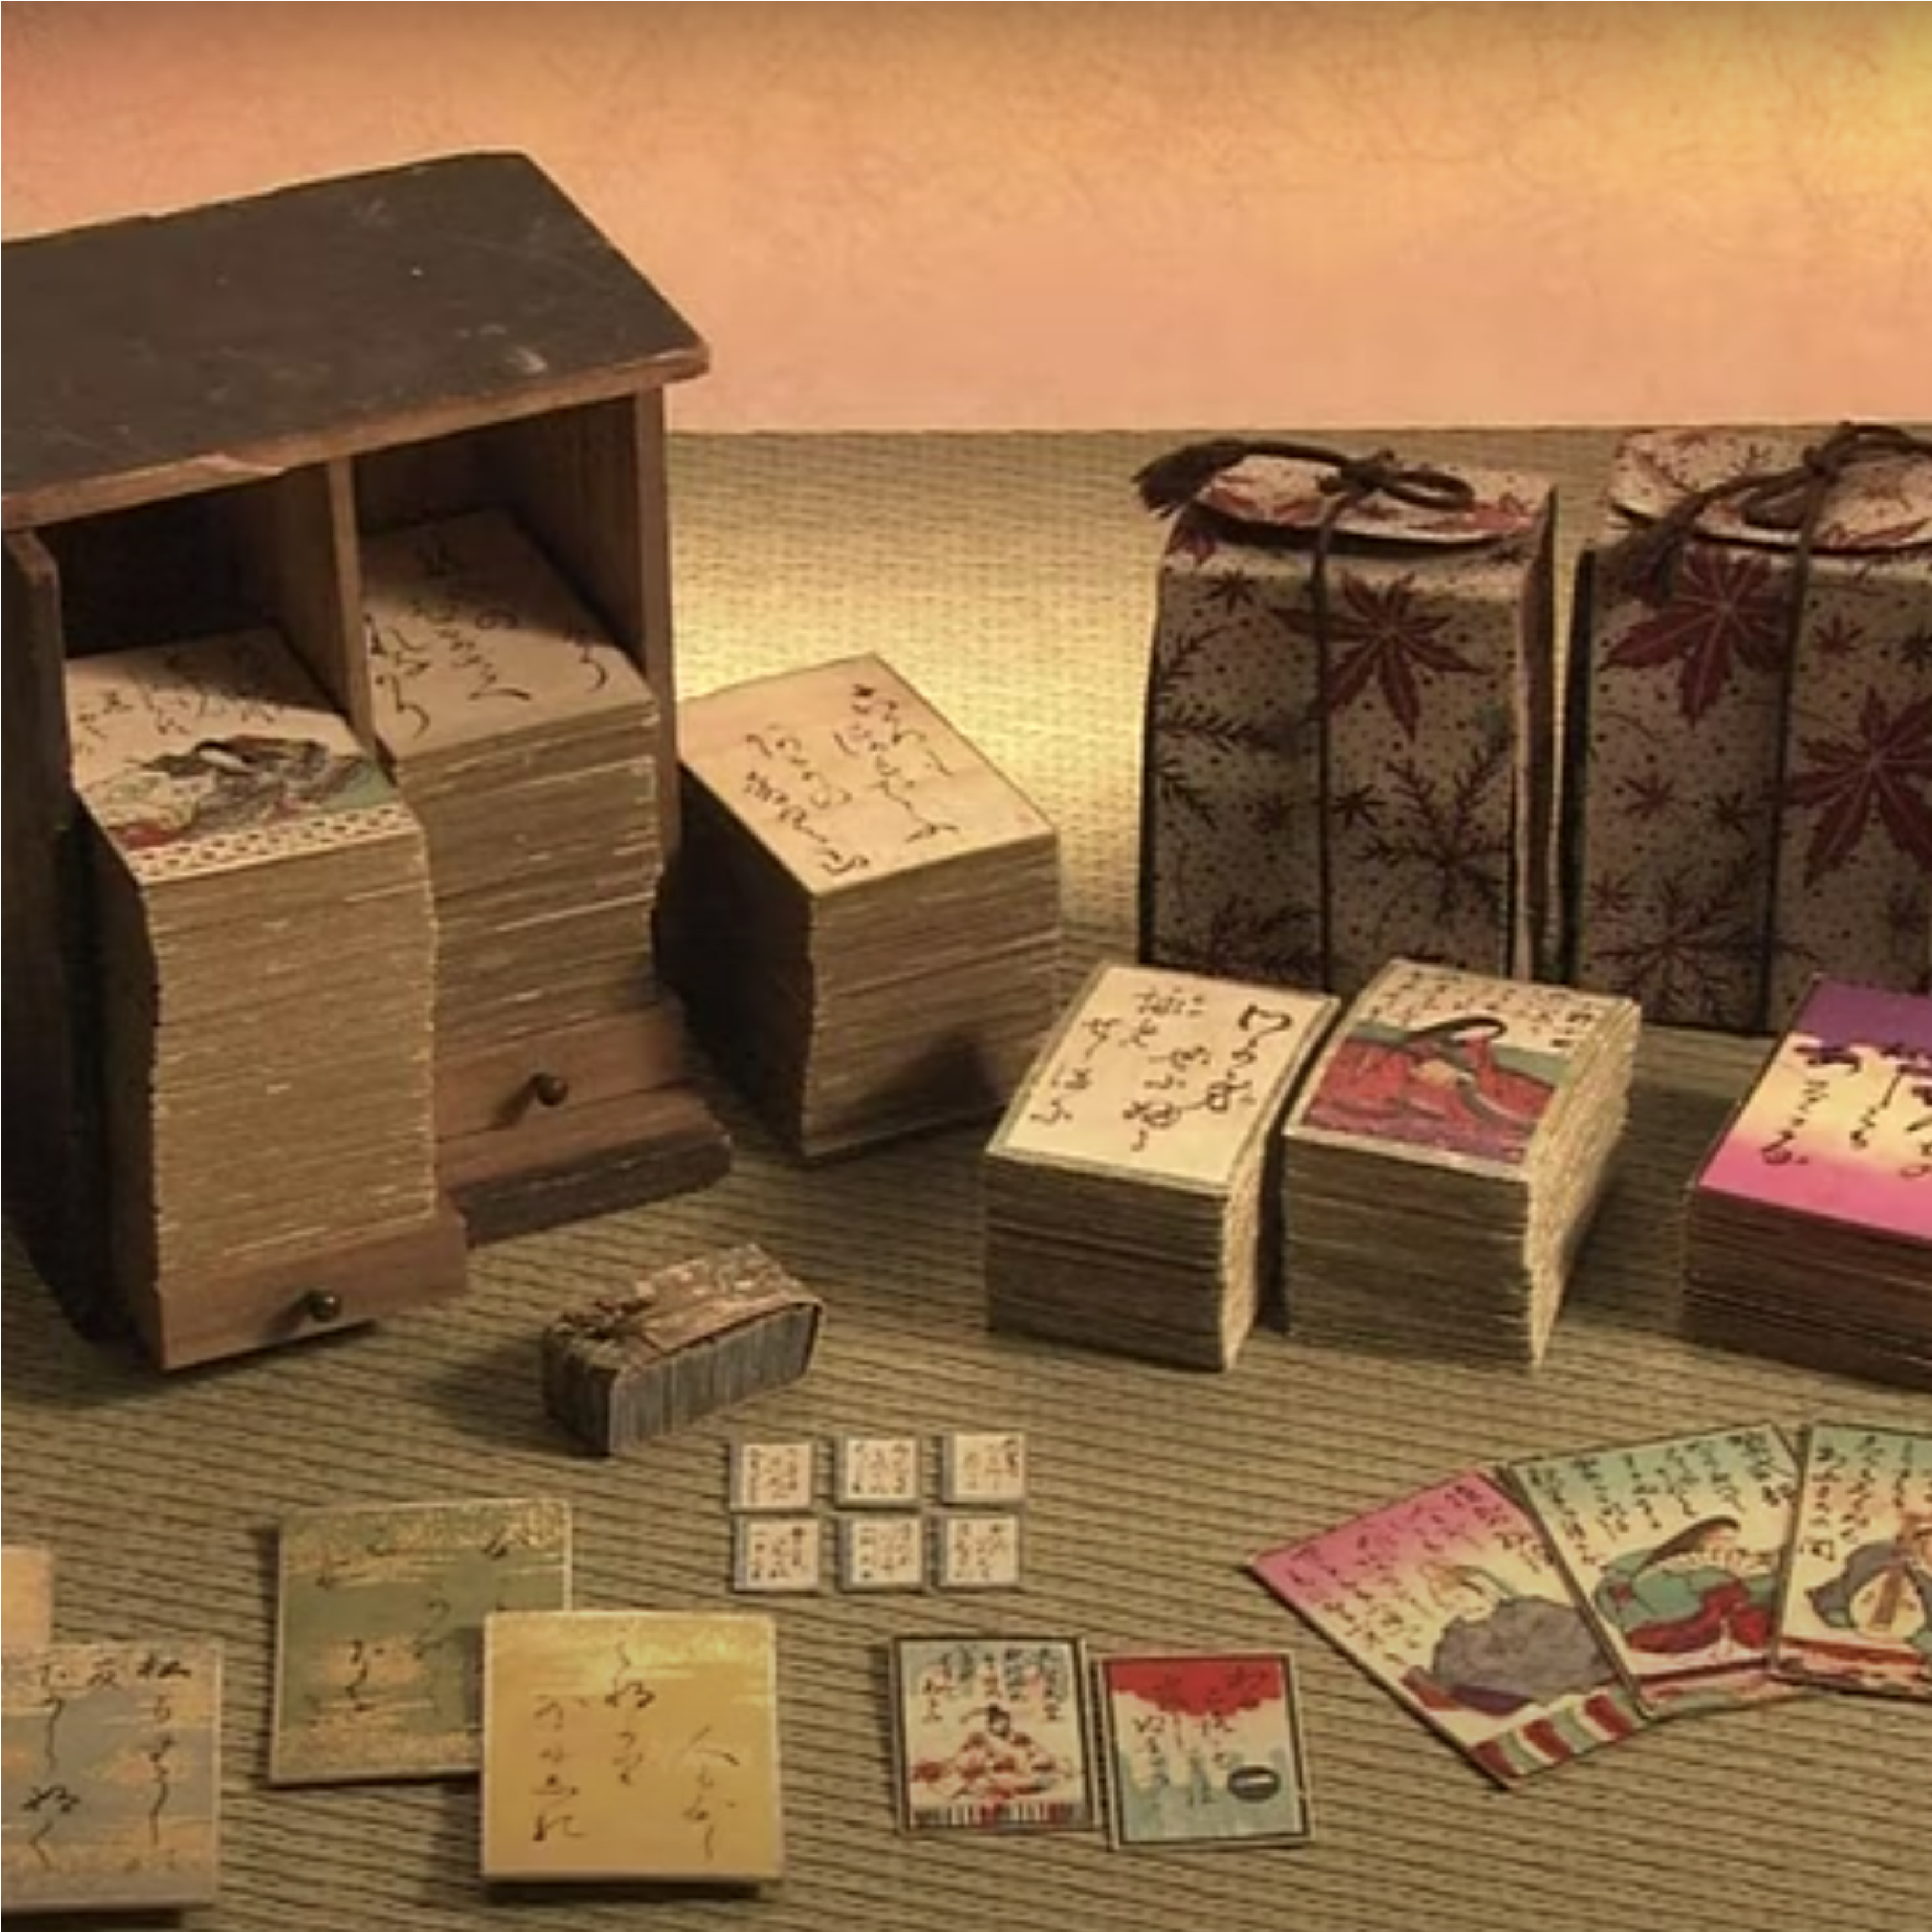 En la imagen se ven cartas tradicionales del juego japonés karuta desplegadas en pilas sobre un tatami. Fueron realizadas sobre papel artesanal e impresos con stencil a color. Algunas pilas de cartas se encuentran dentro de su caja de madera.